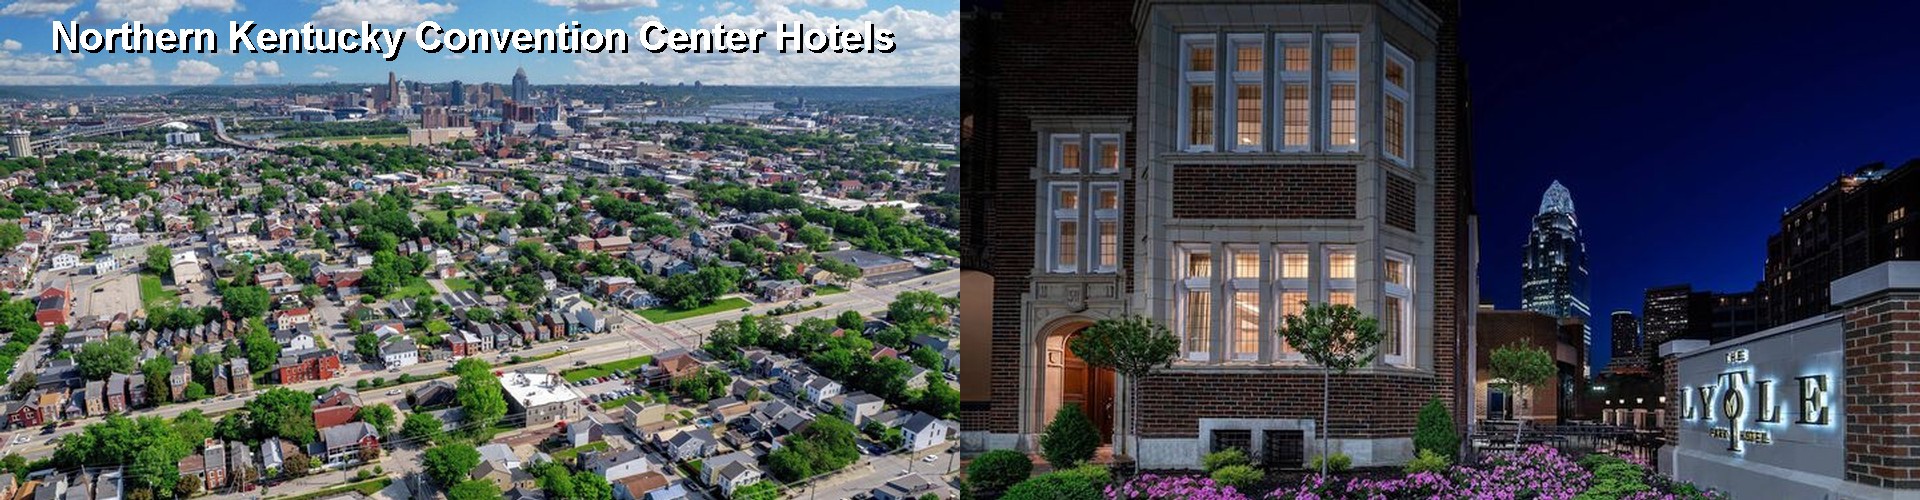 5 Best Hotels near Northern Kentucky Convention Center